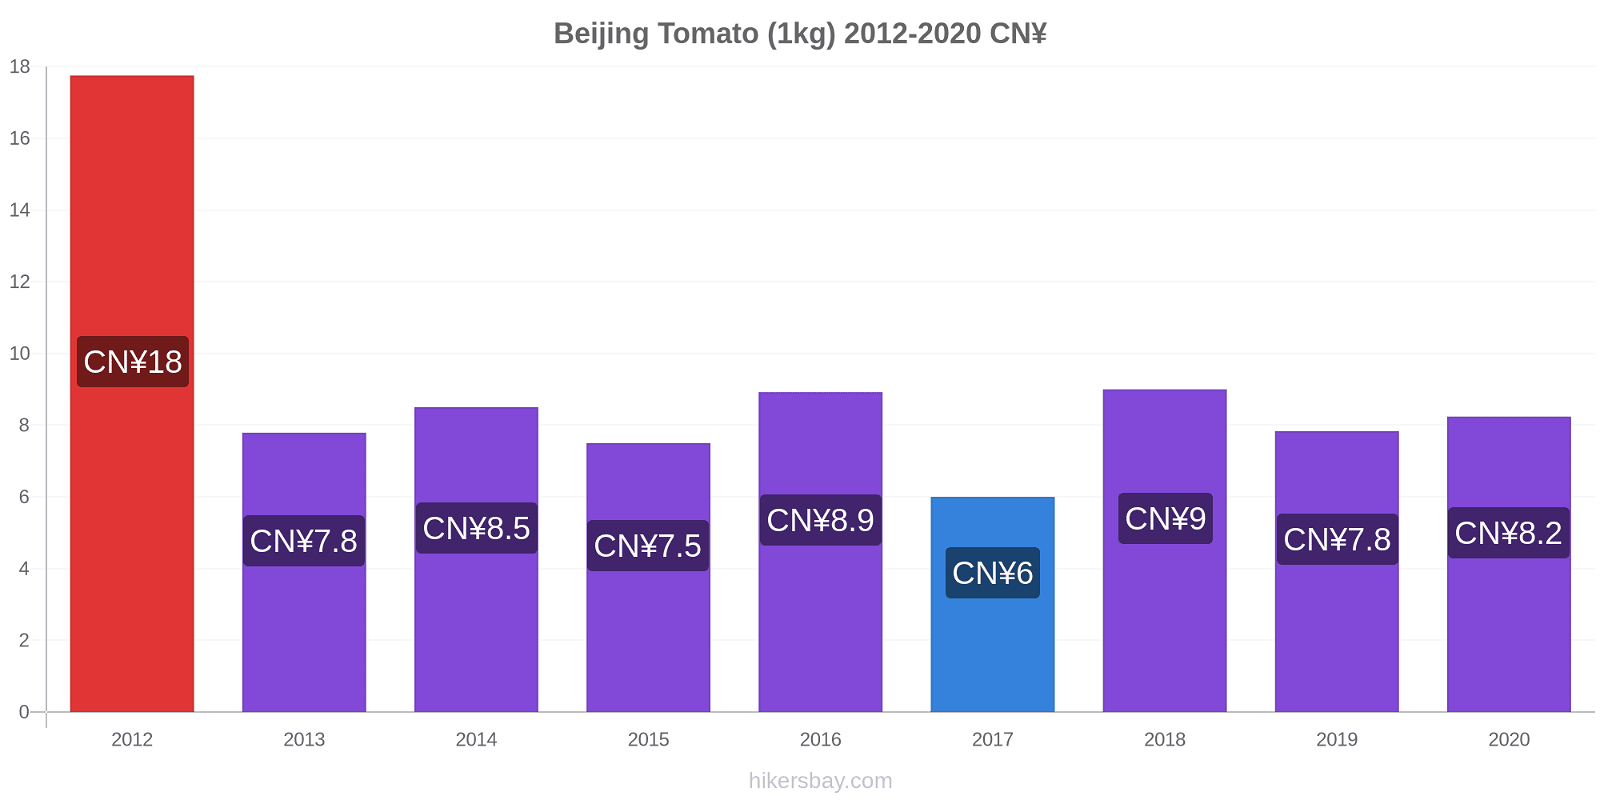 Beijing price changes Tomato (1kg) hikersbay.com